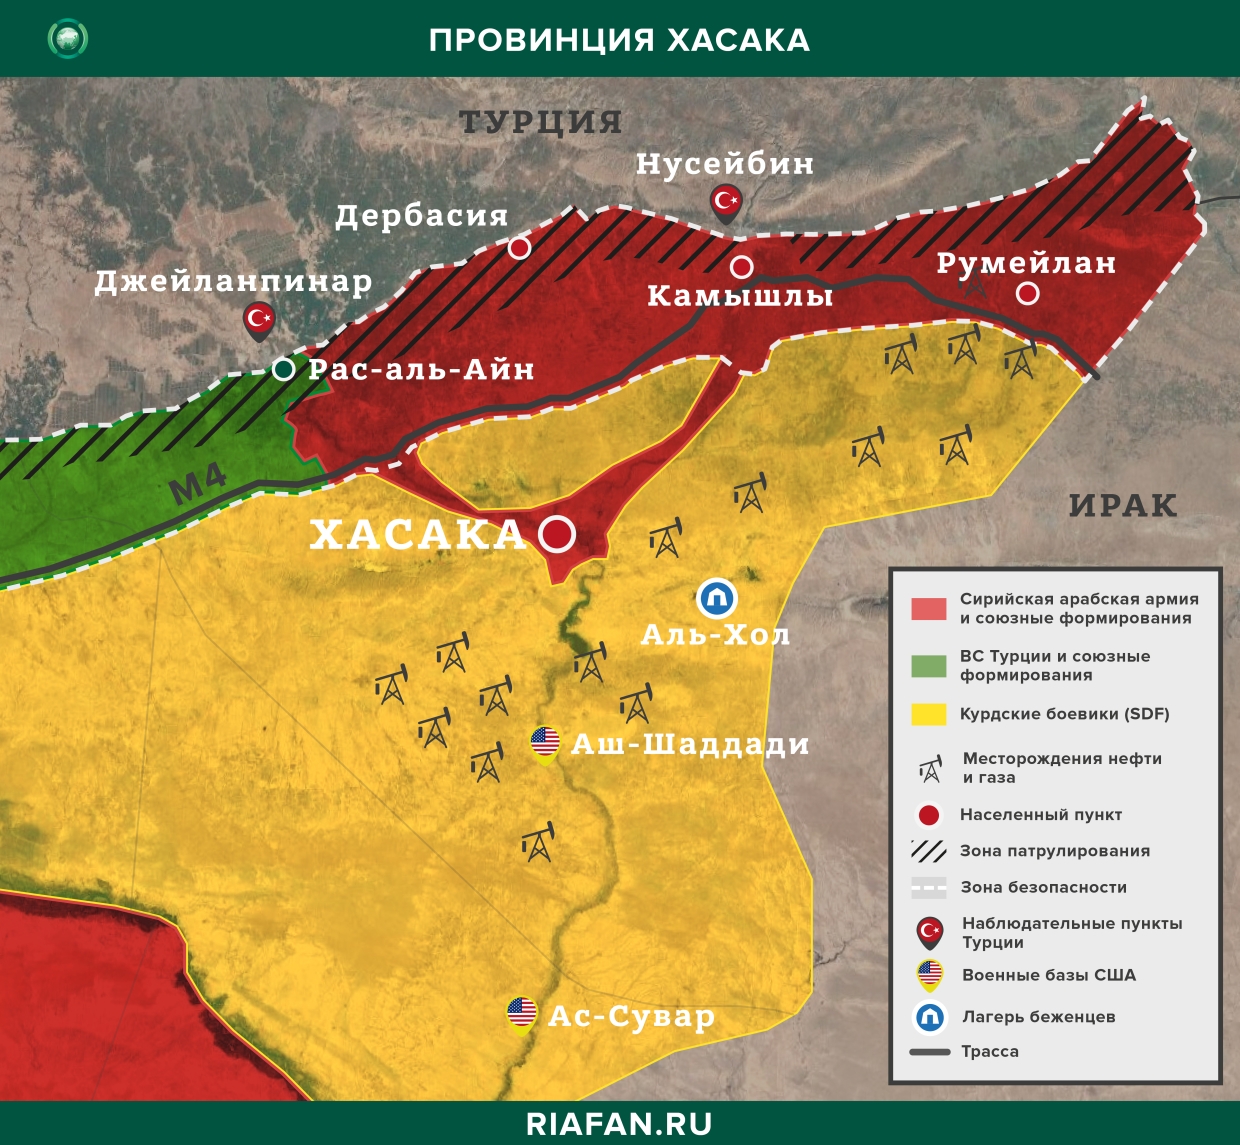 Nouvelles de Syrie 6 Septembre 16.30: двое турецких военных были ранены в Идлибе